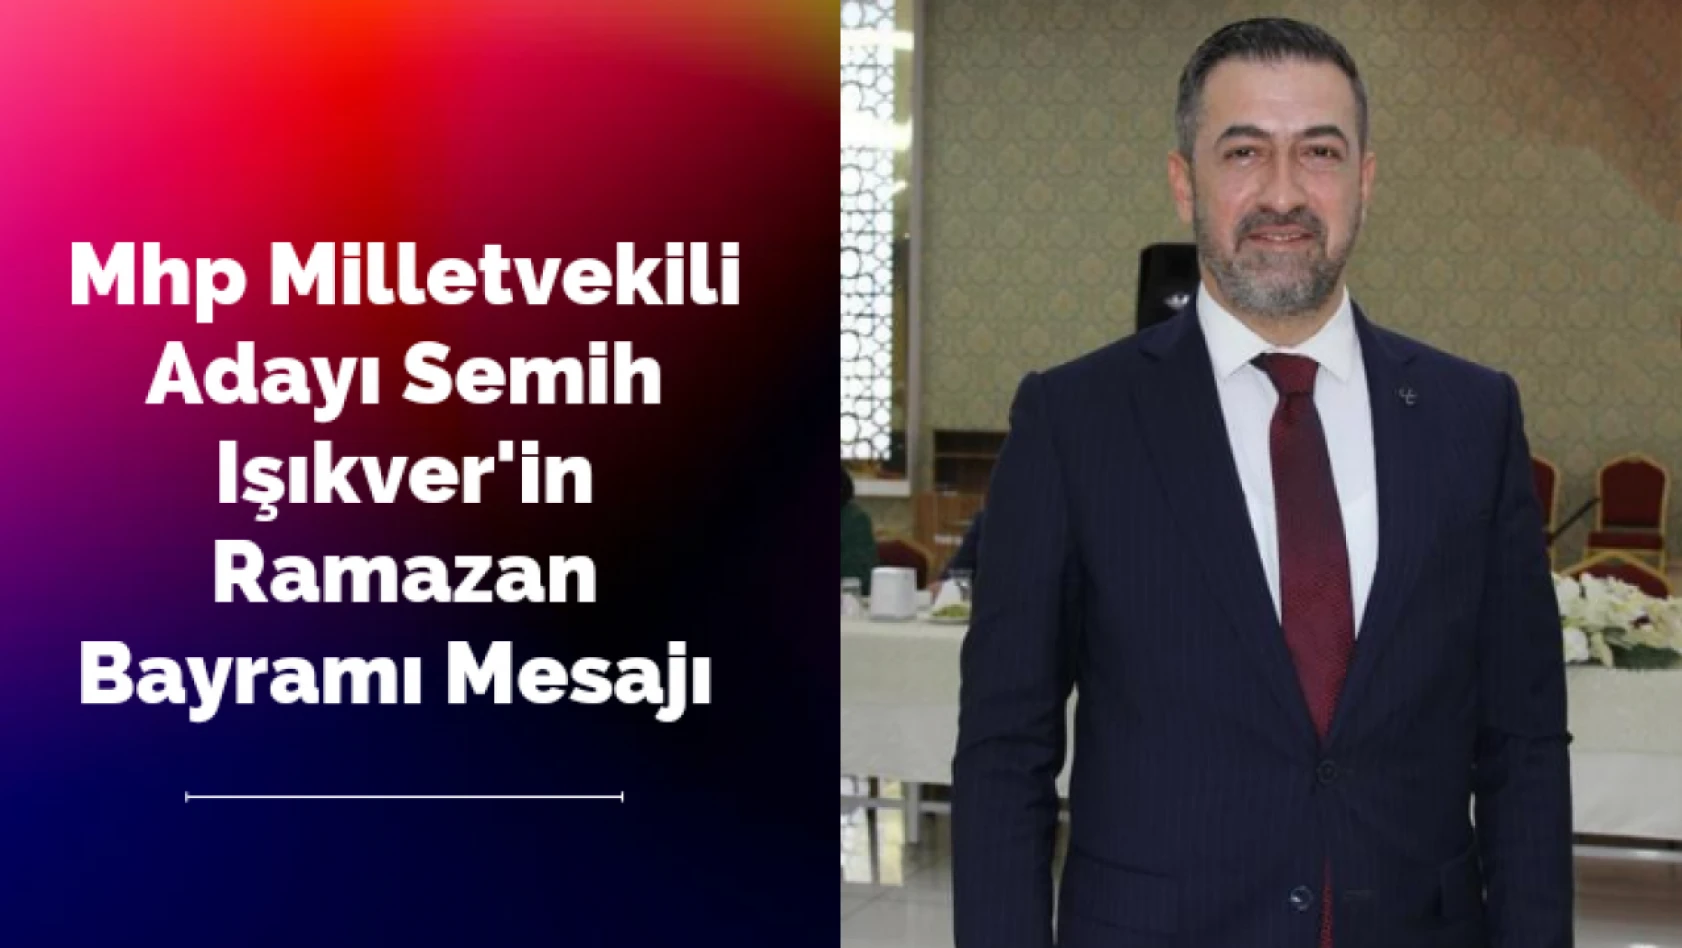 Mhp Milletvekili Adayı Semih Işıkver'in Ramazan Bayramı Mesajı